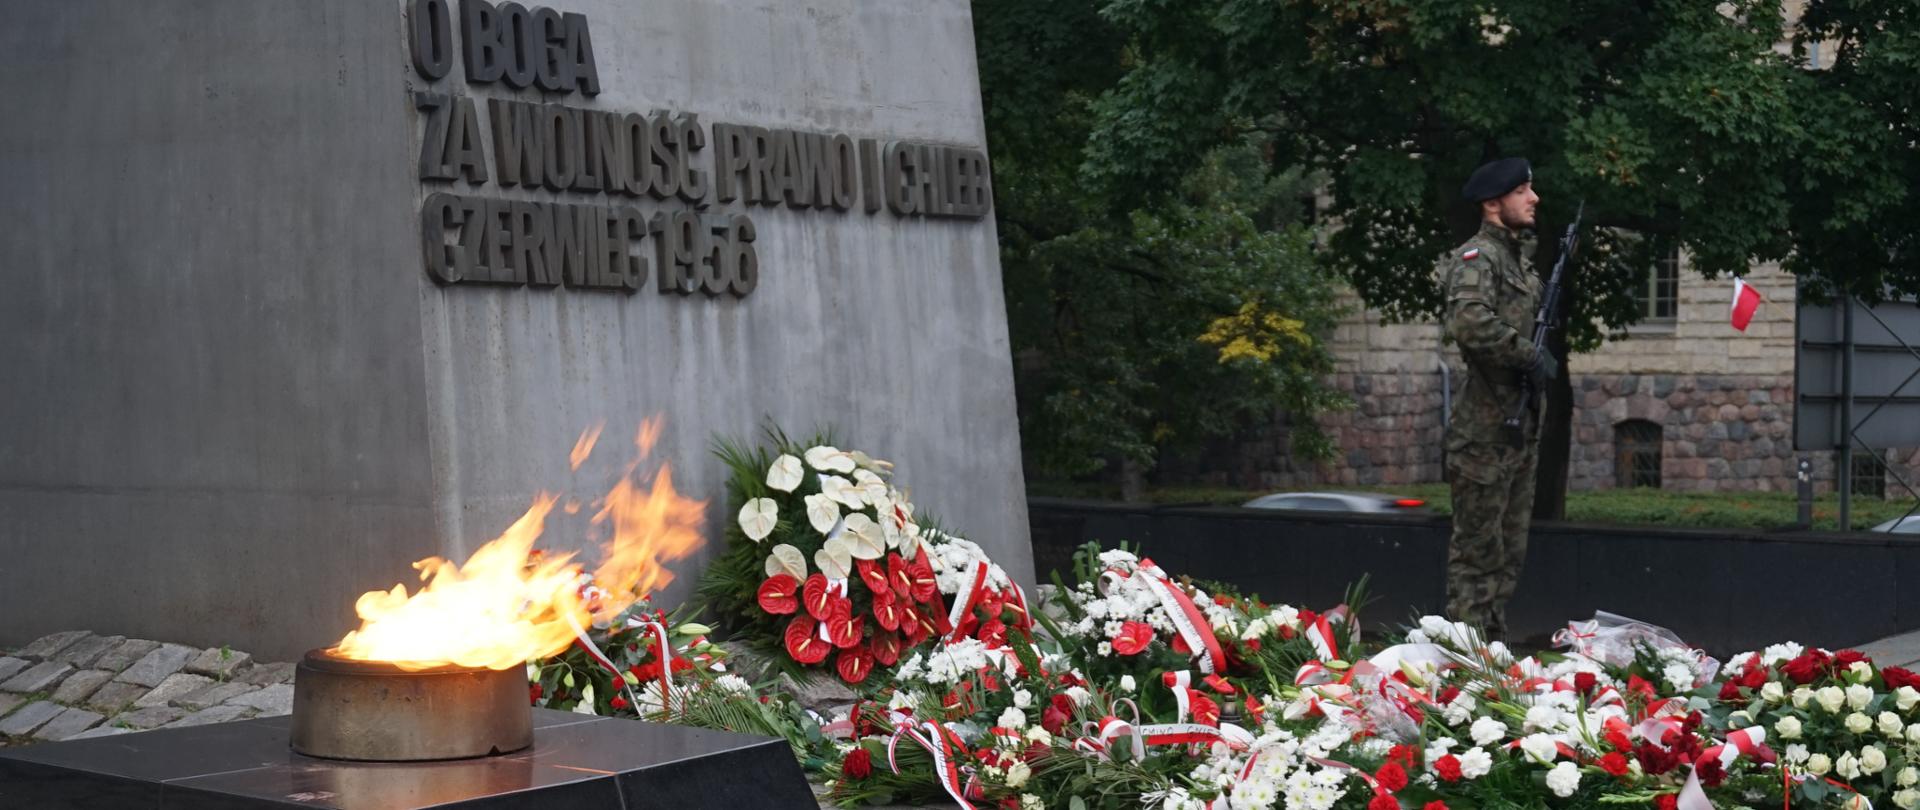 duzy znicz, wieńce biało czerwonych kwiatówpod pomniikiem na którym widnieje napis o boga za wolność prawo i chleb czerwiec 1956